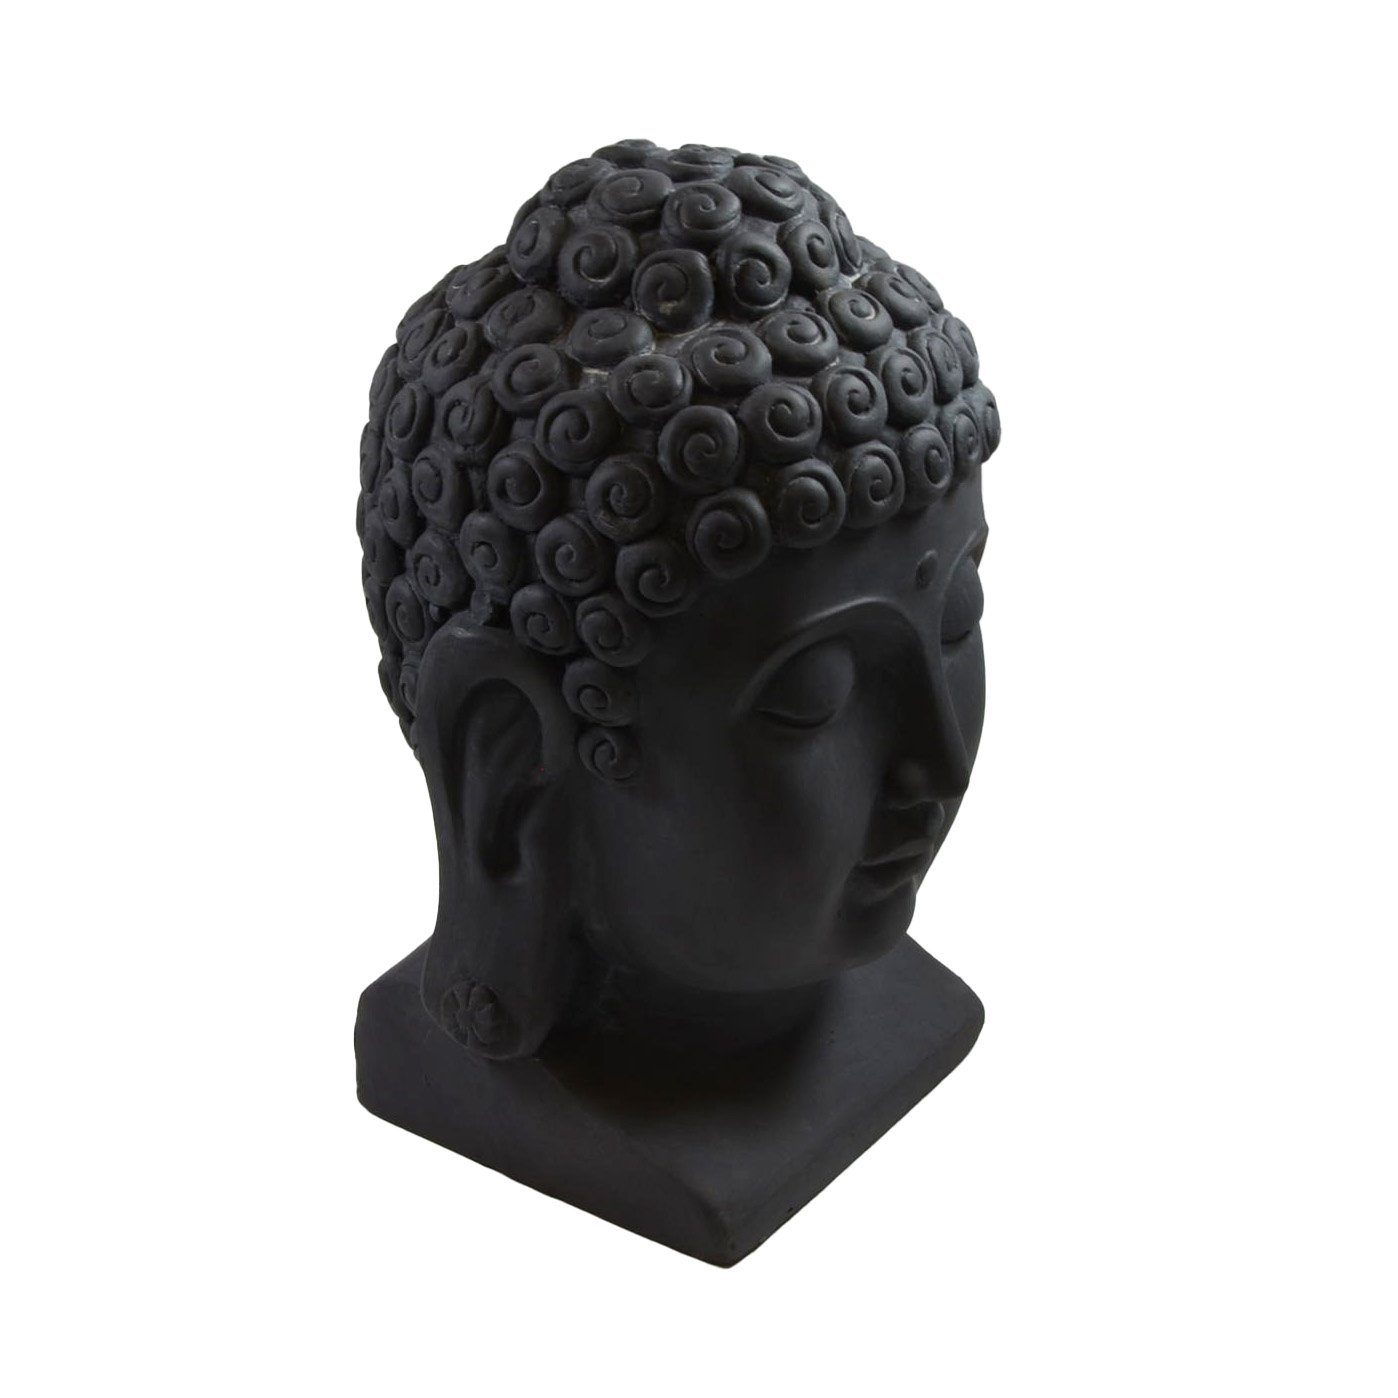 cm H B&S Feng Buddha Deko 40 Figur Steinfigur Shui Dekofigur Kopf Skulptur groß